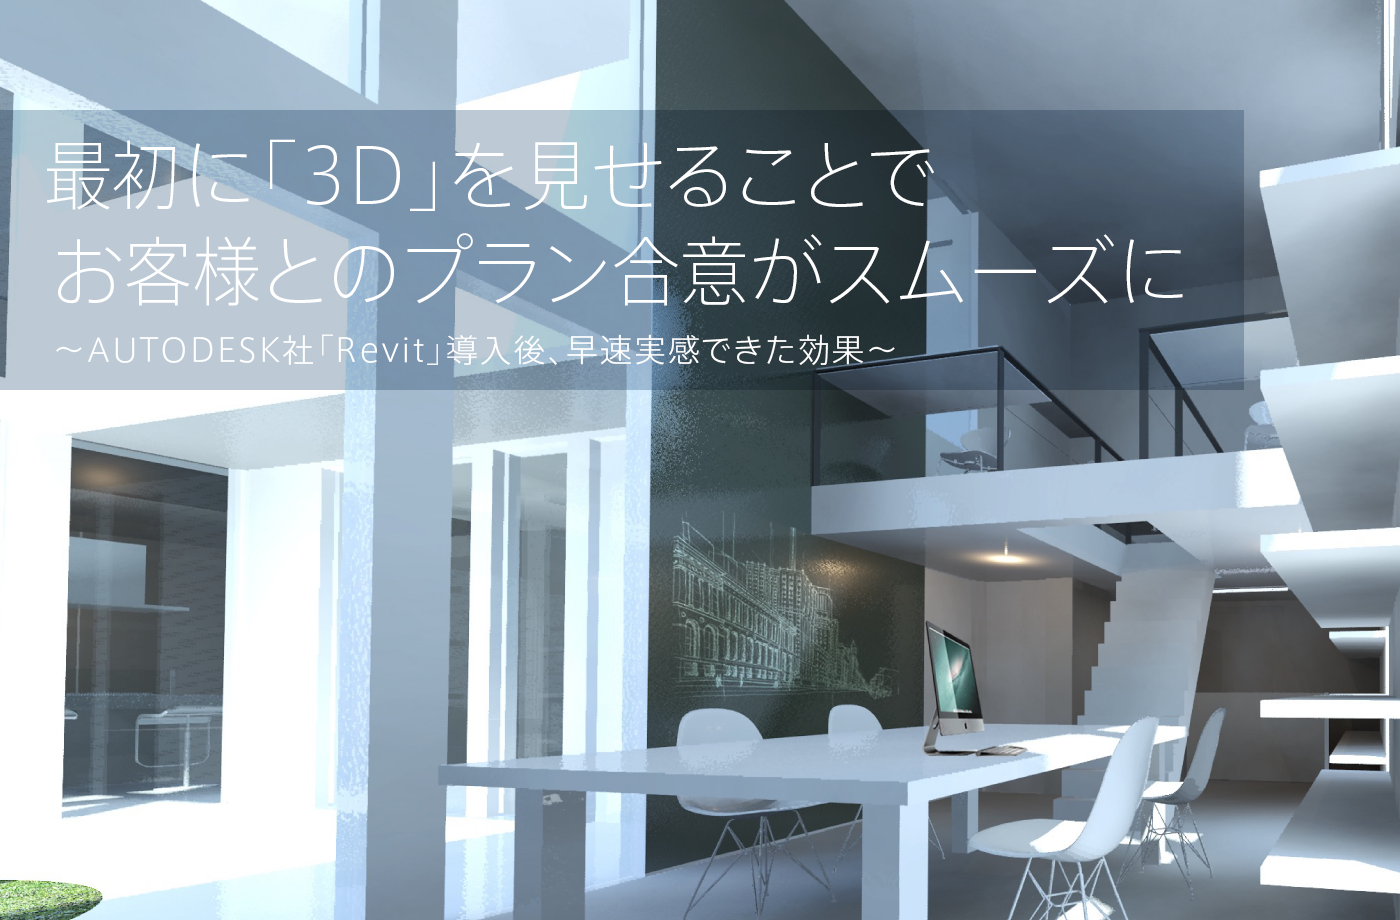 最初に「3D」を見せることでお客様とのプラン合意がスムーズに ～AUTODESK社「Revit」導入後、早速実感できた効果～